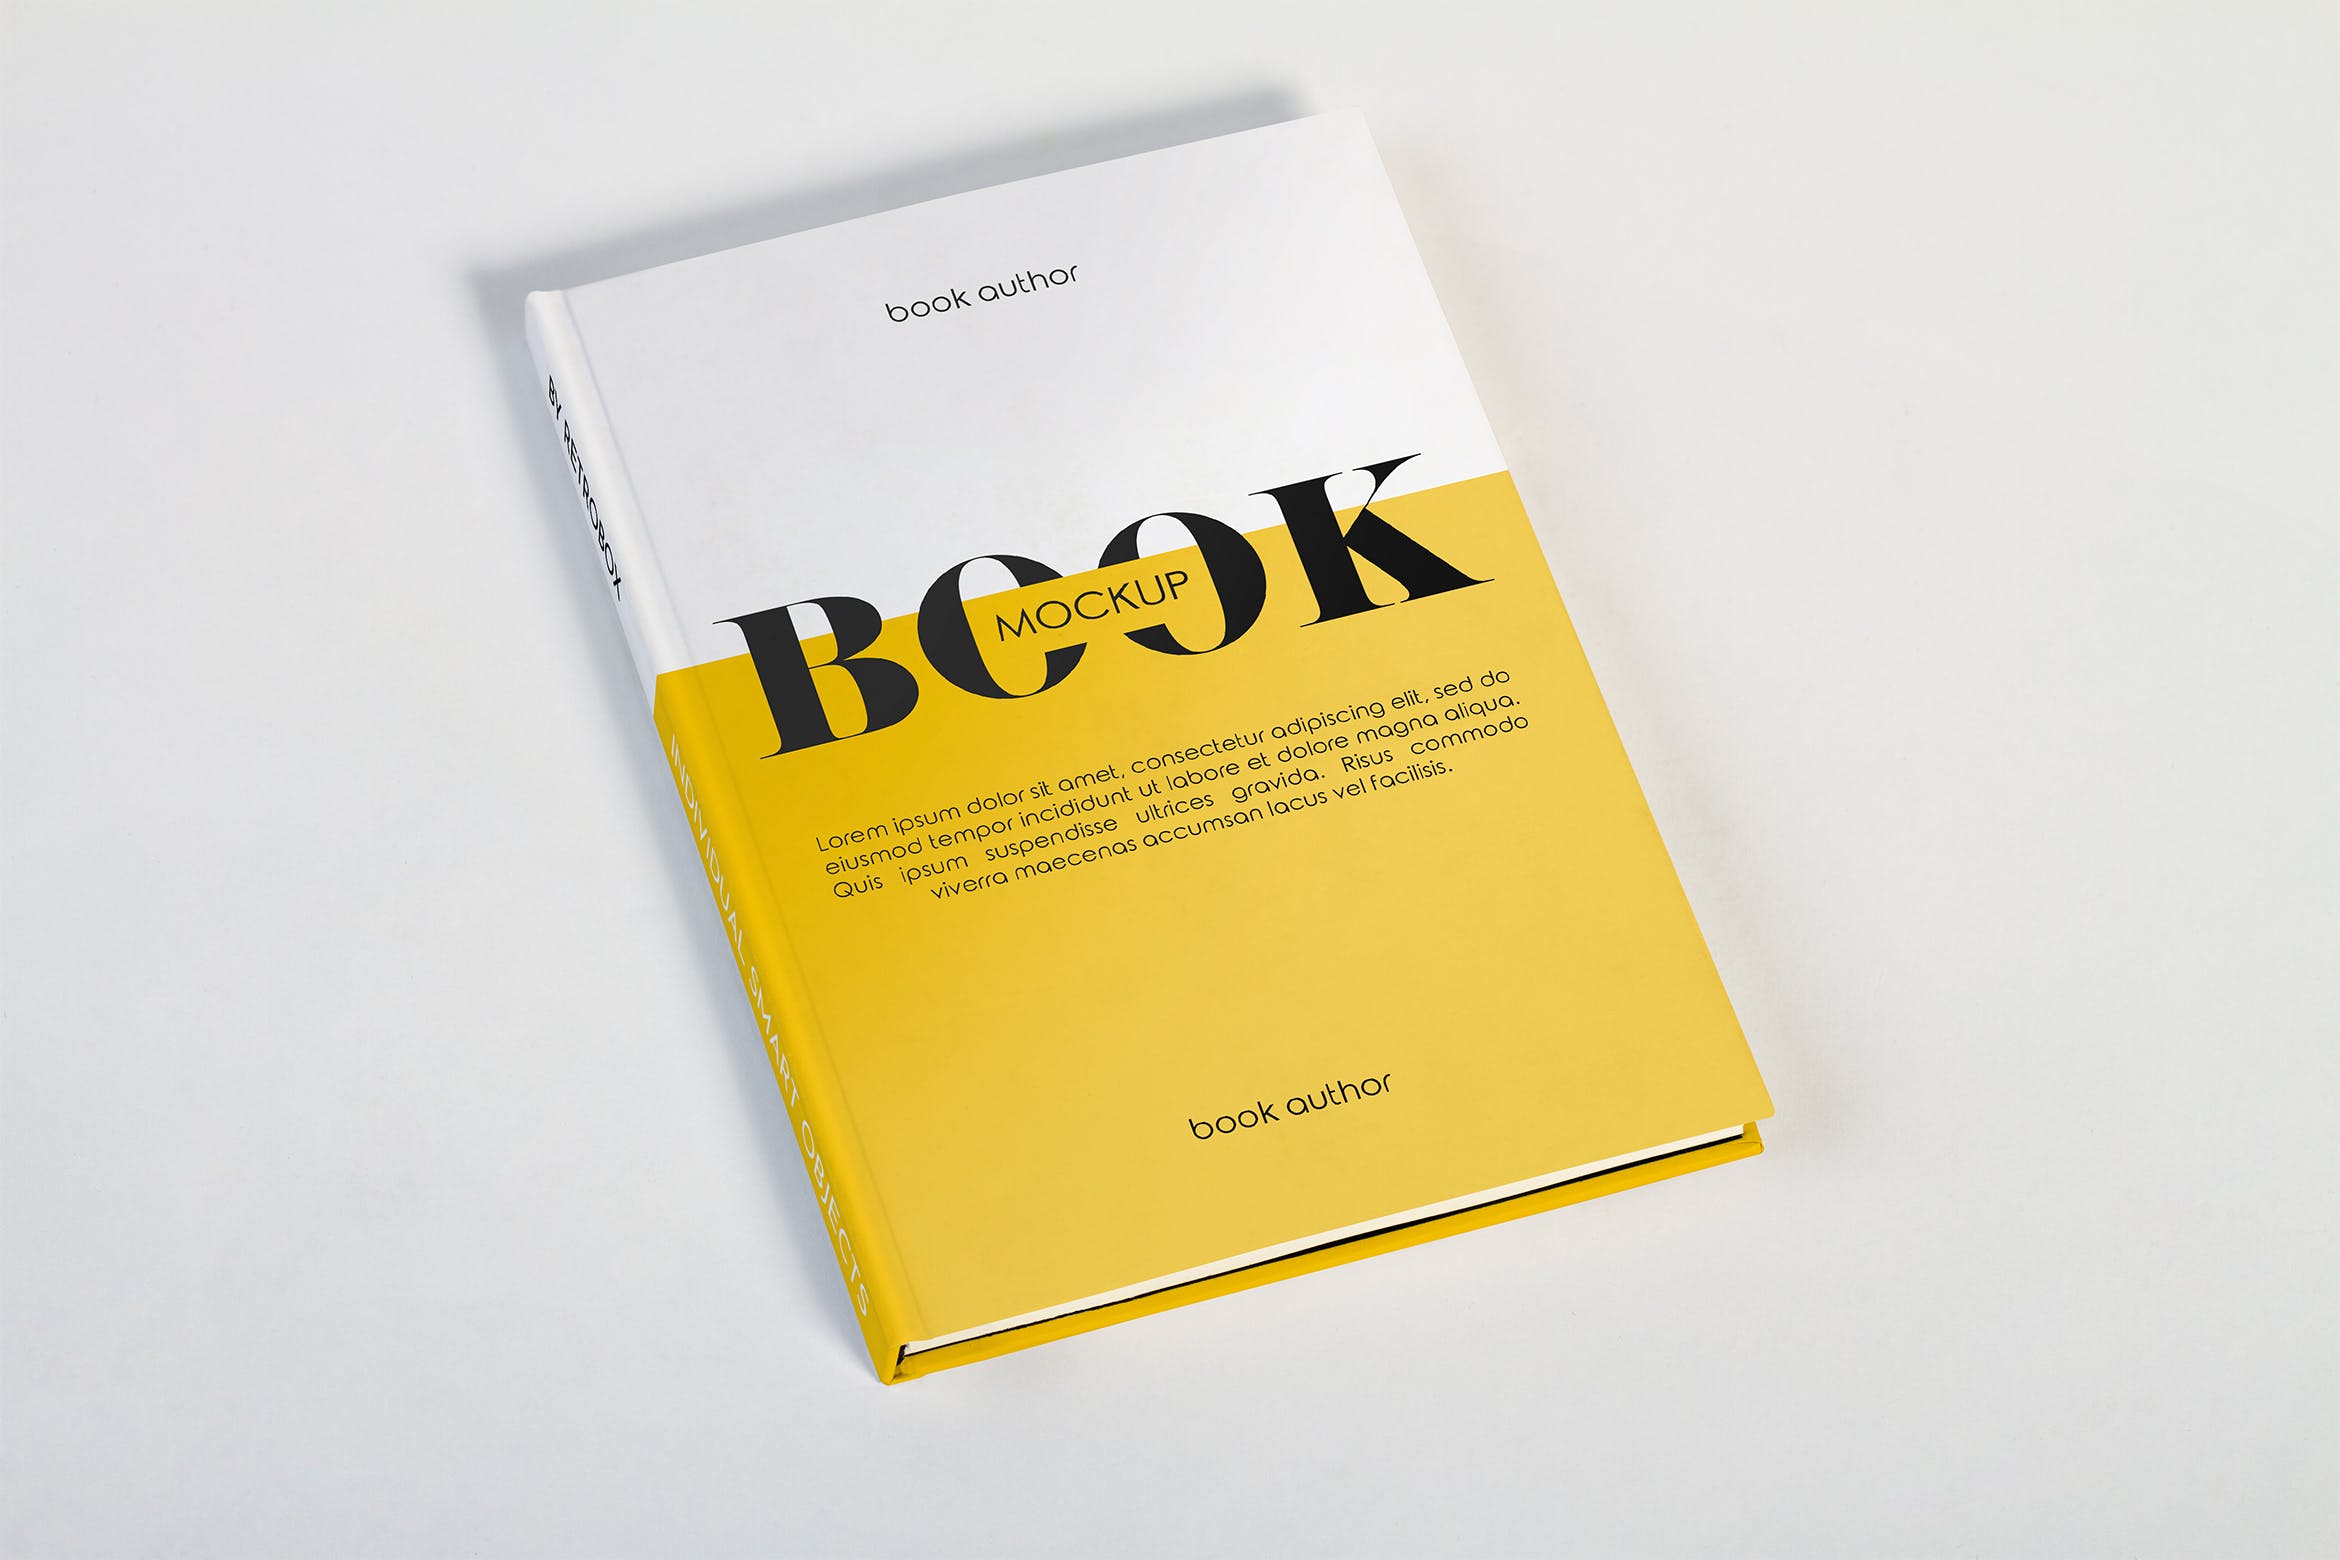 硬纸板材质书籍封面效果图样机模板 Hard Cover Book Mockup